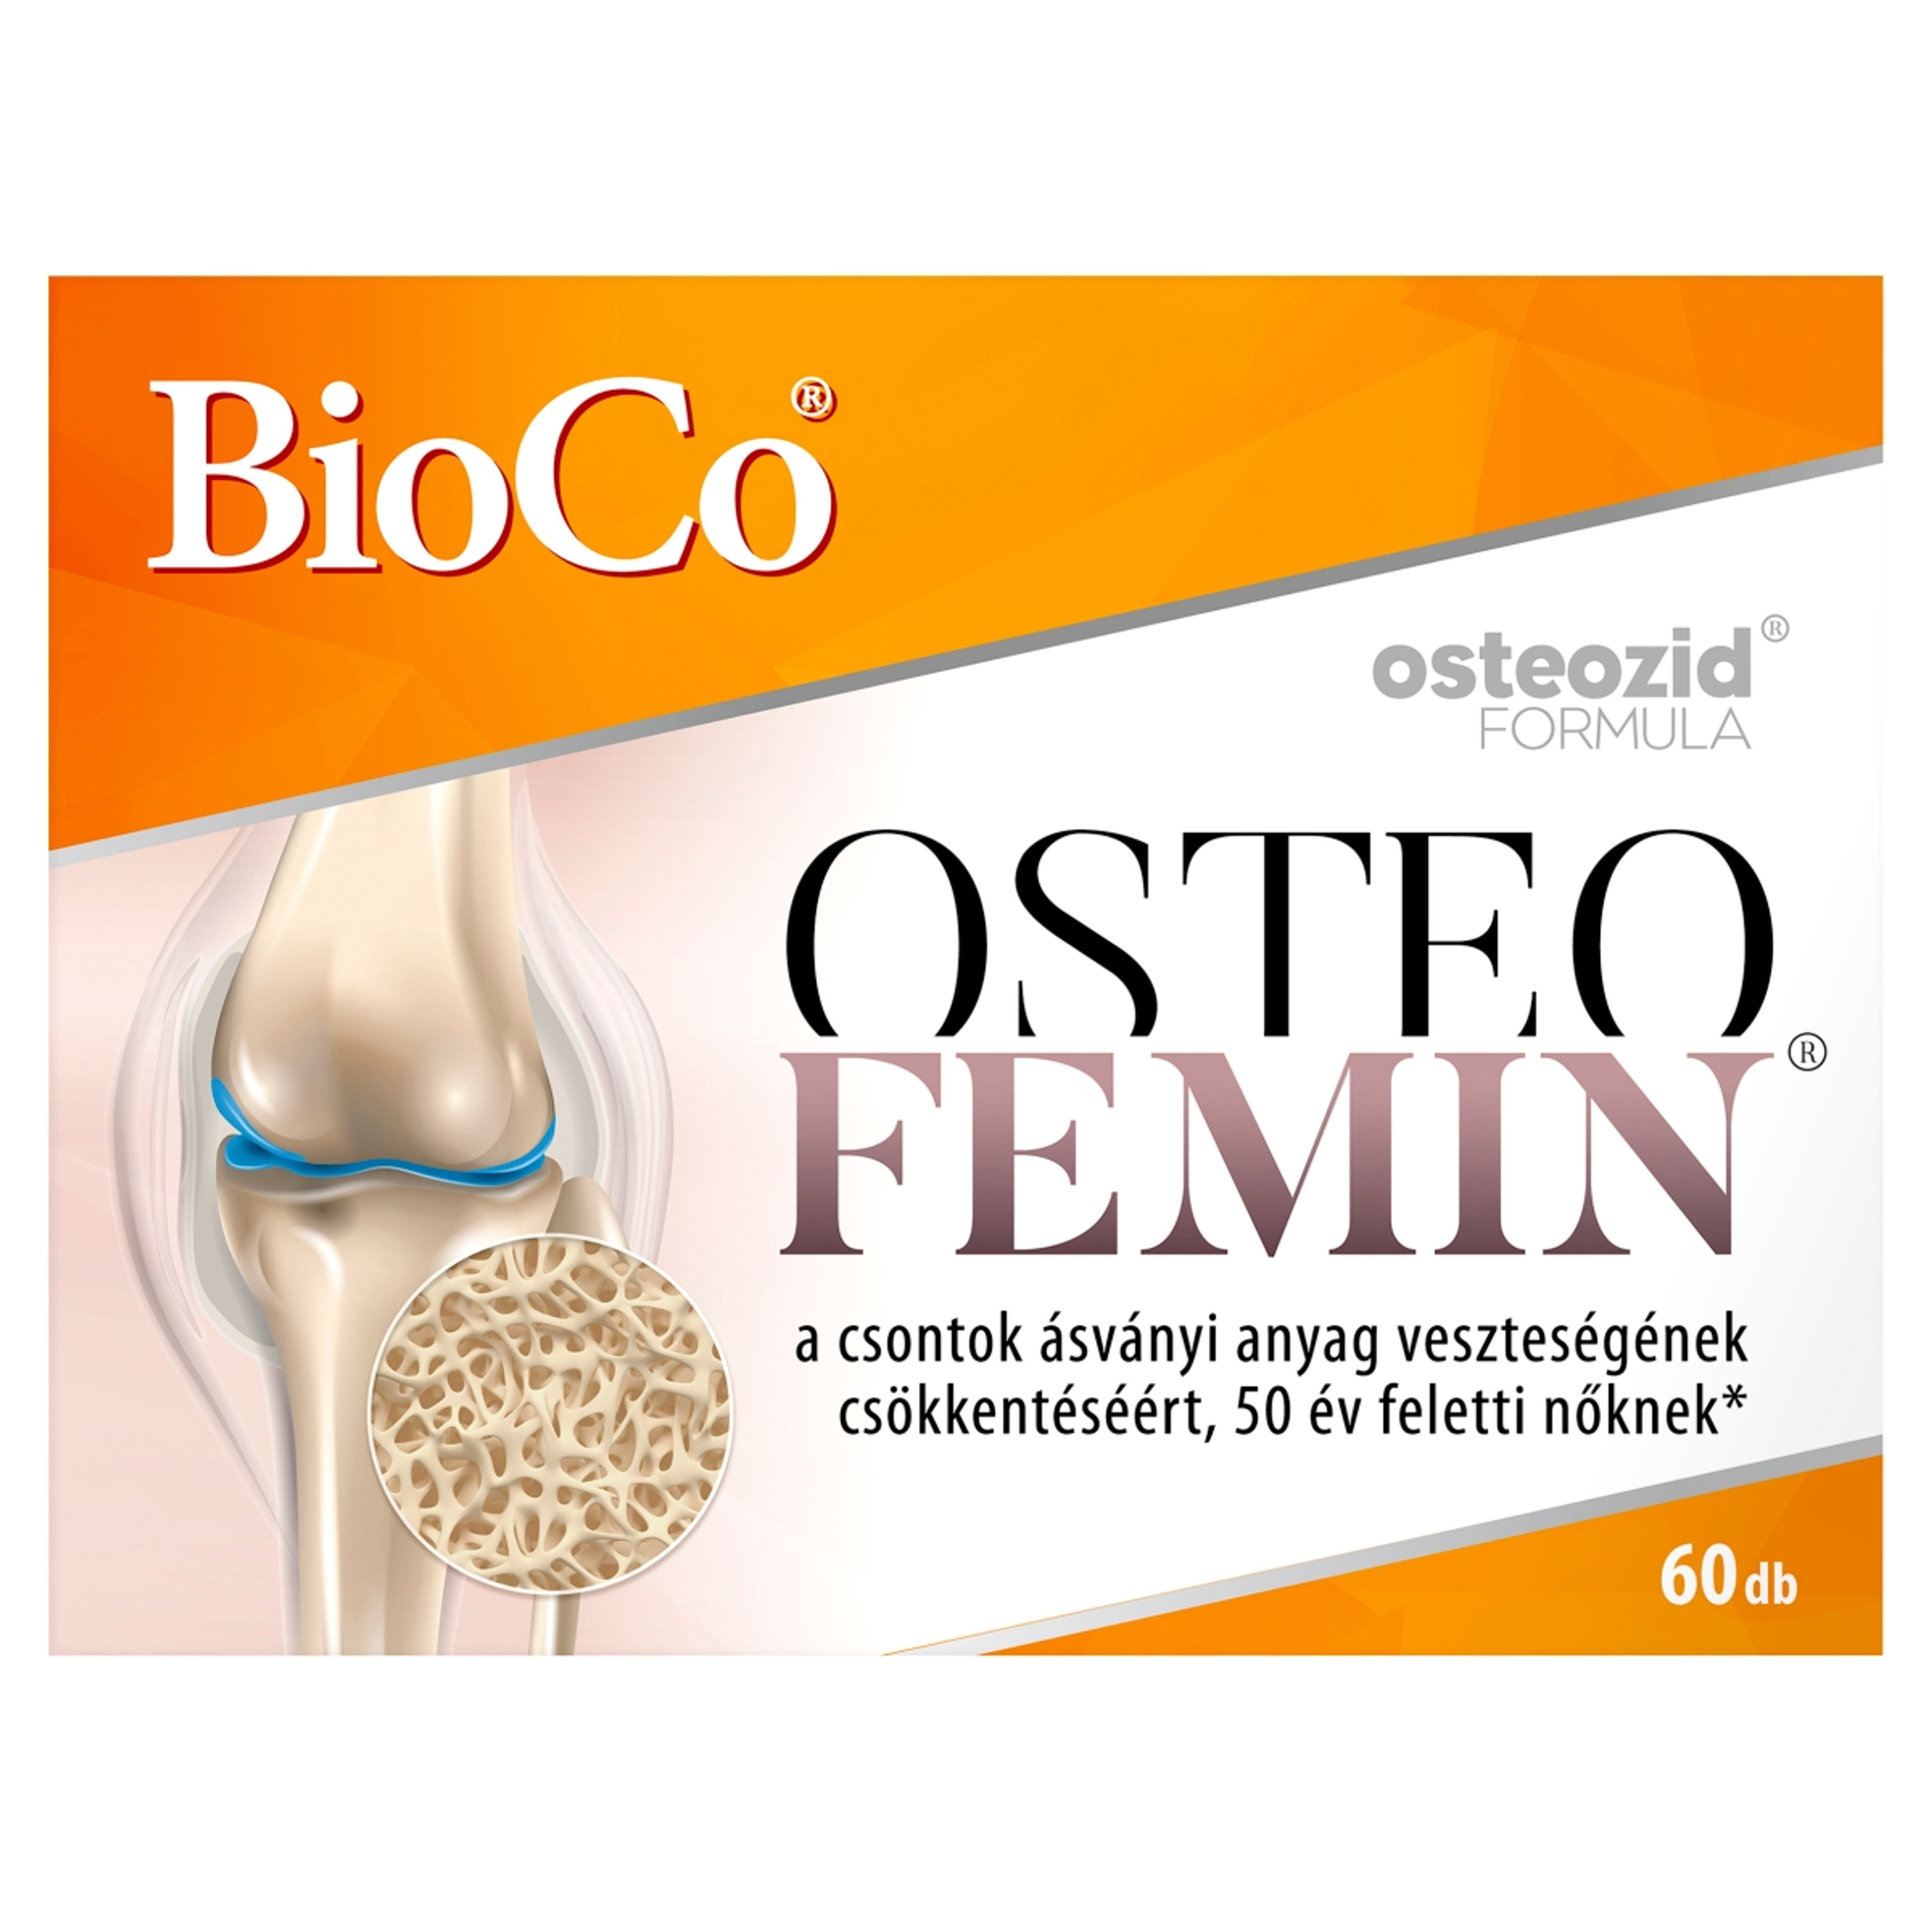 Bioco osteofemin filmtabletta - 60 db-1